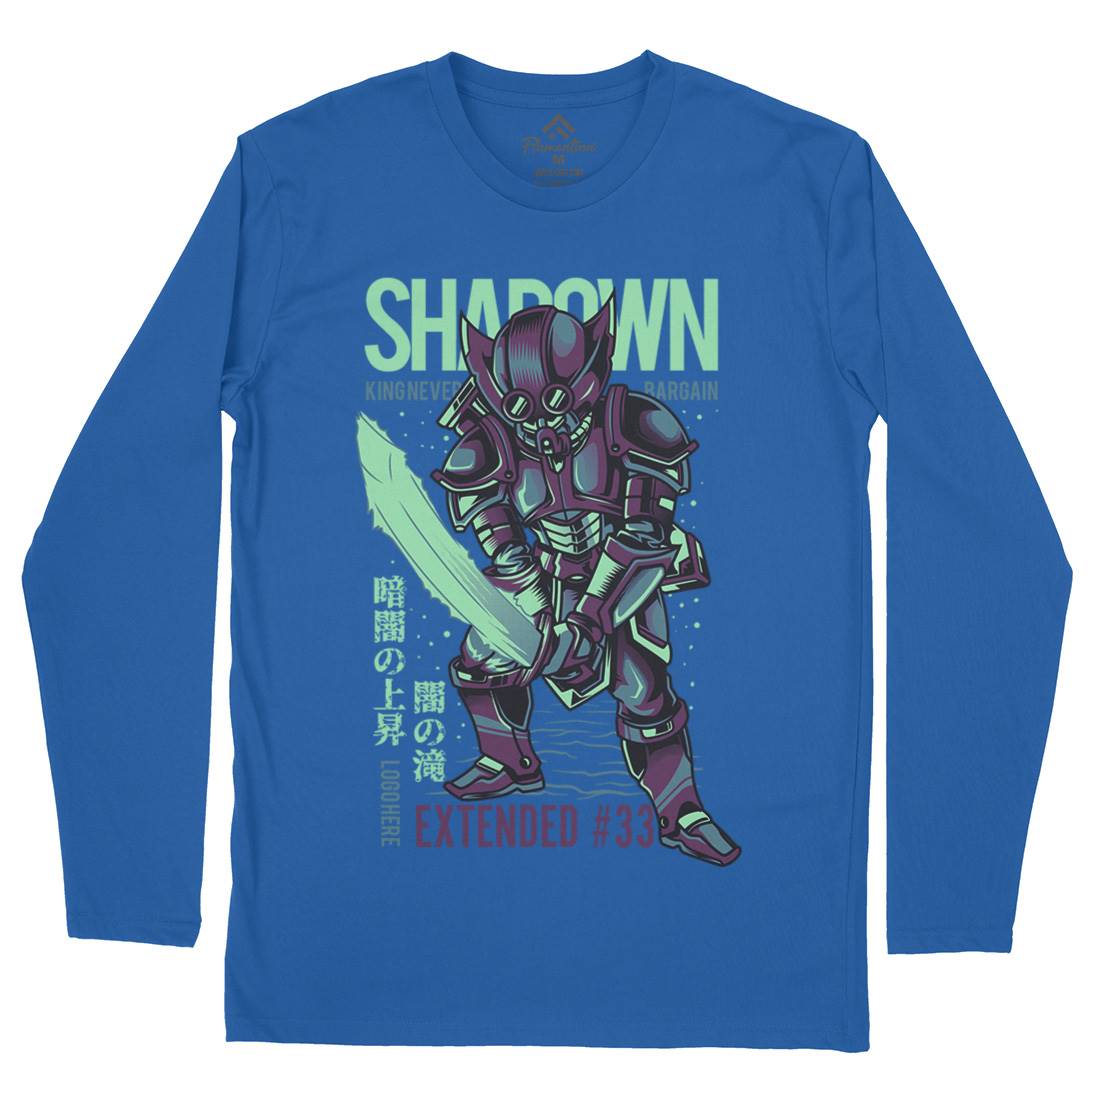 Shadown Knight Mens Long Sleeve T-Shirt Warriors D812